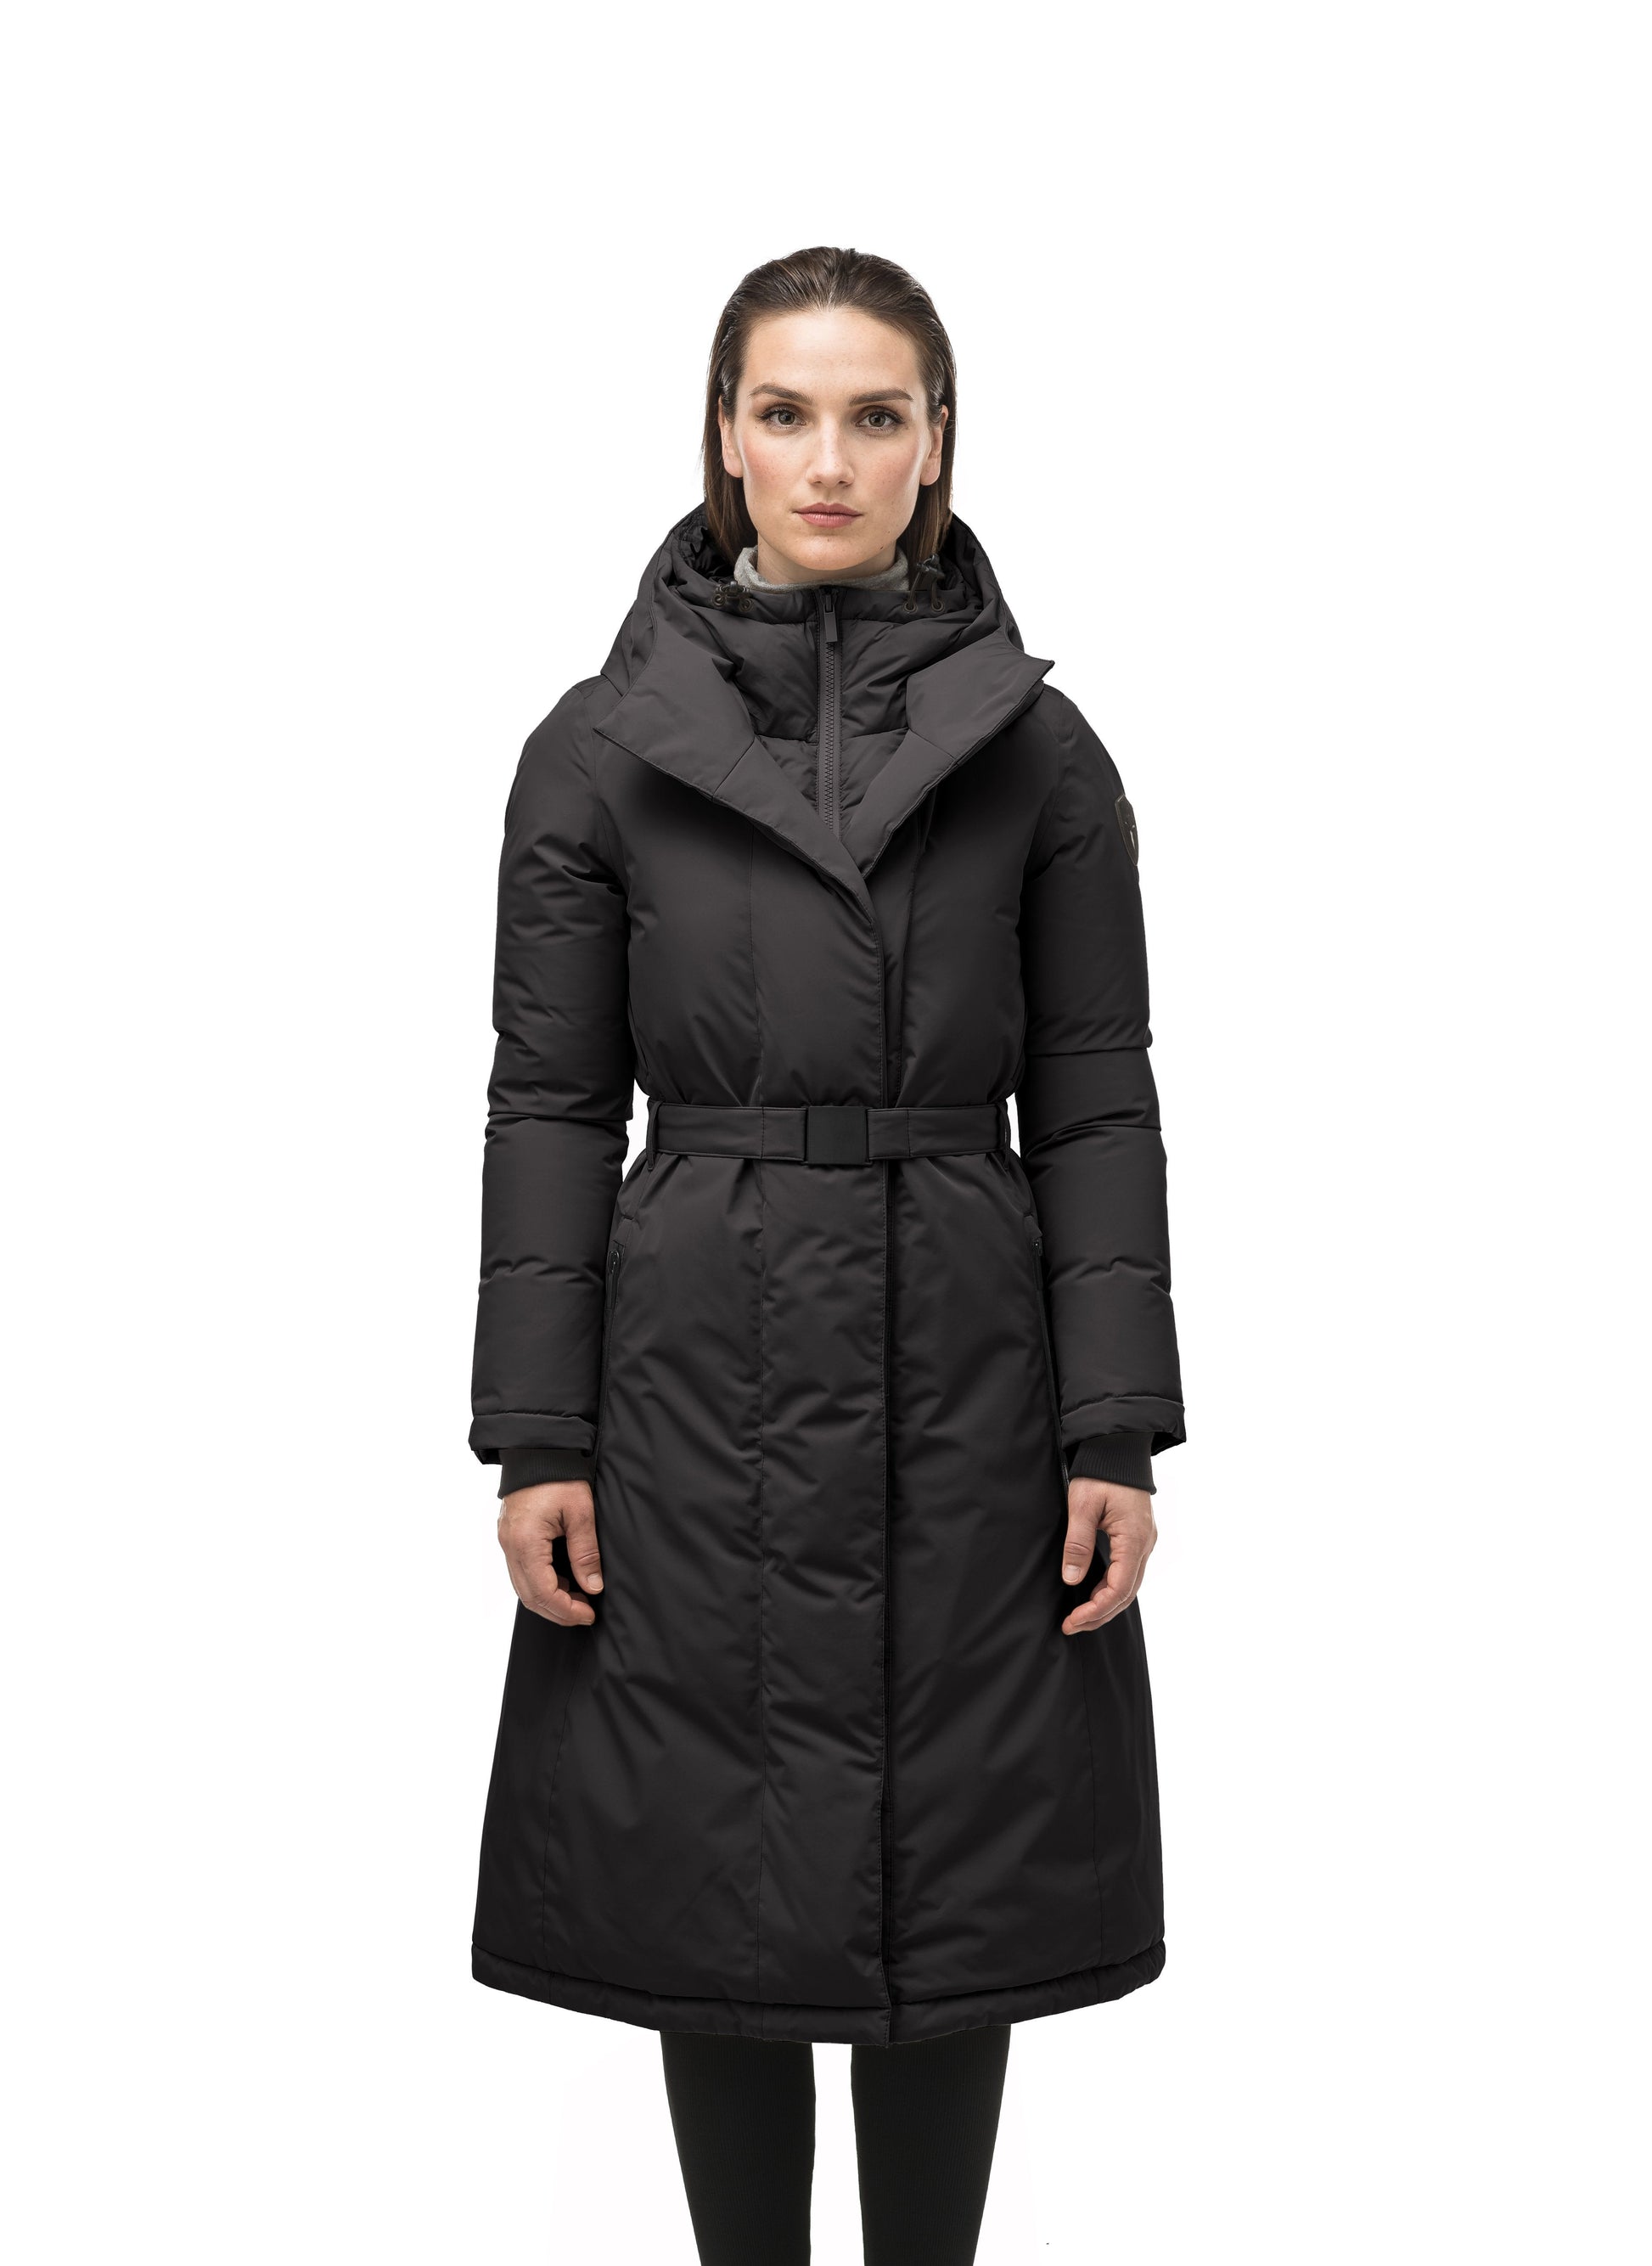 Women's Coats, Long & Belted Coats for Women